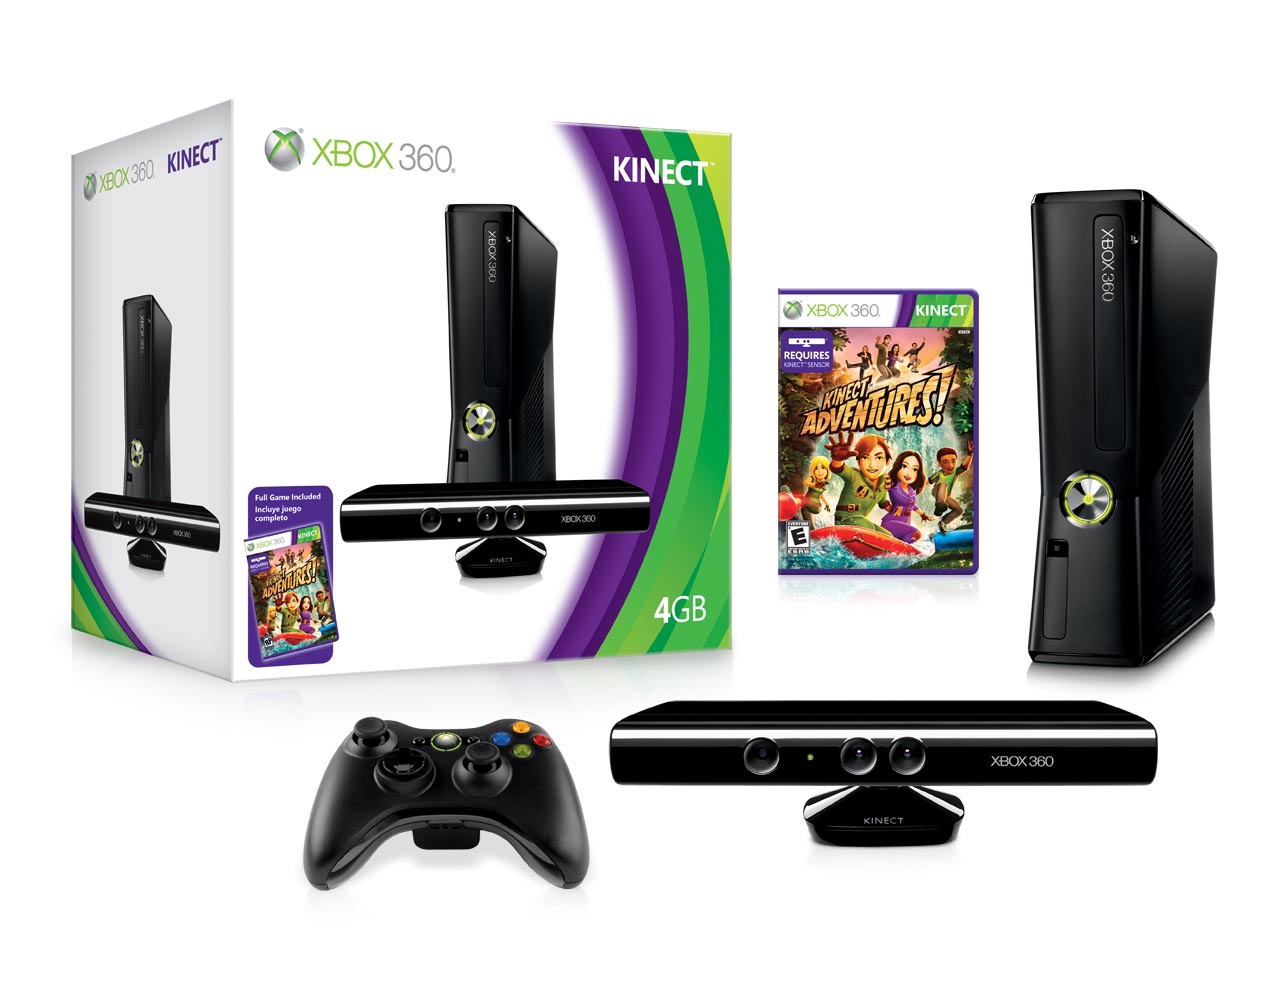 Kinect_et_Xbox_360_S_4Gb-c01af3.jpg